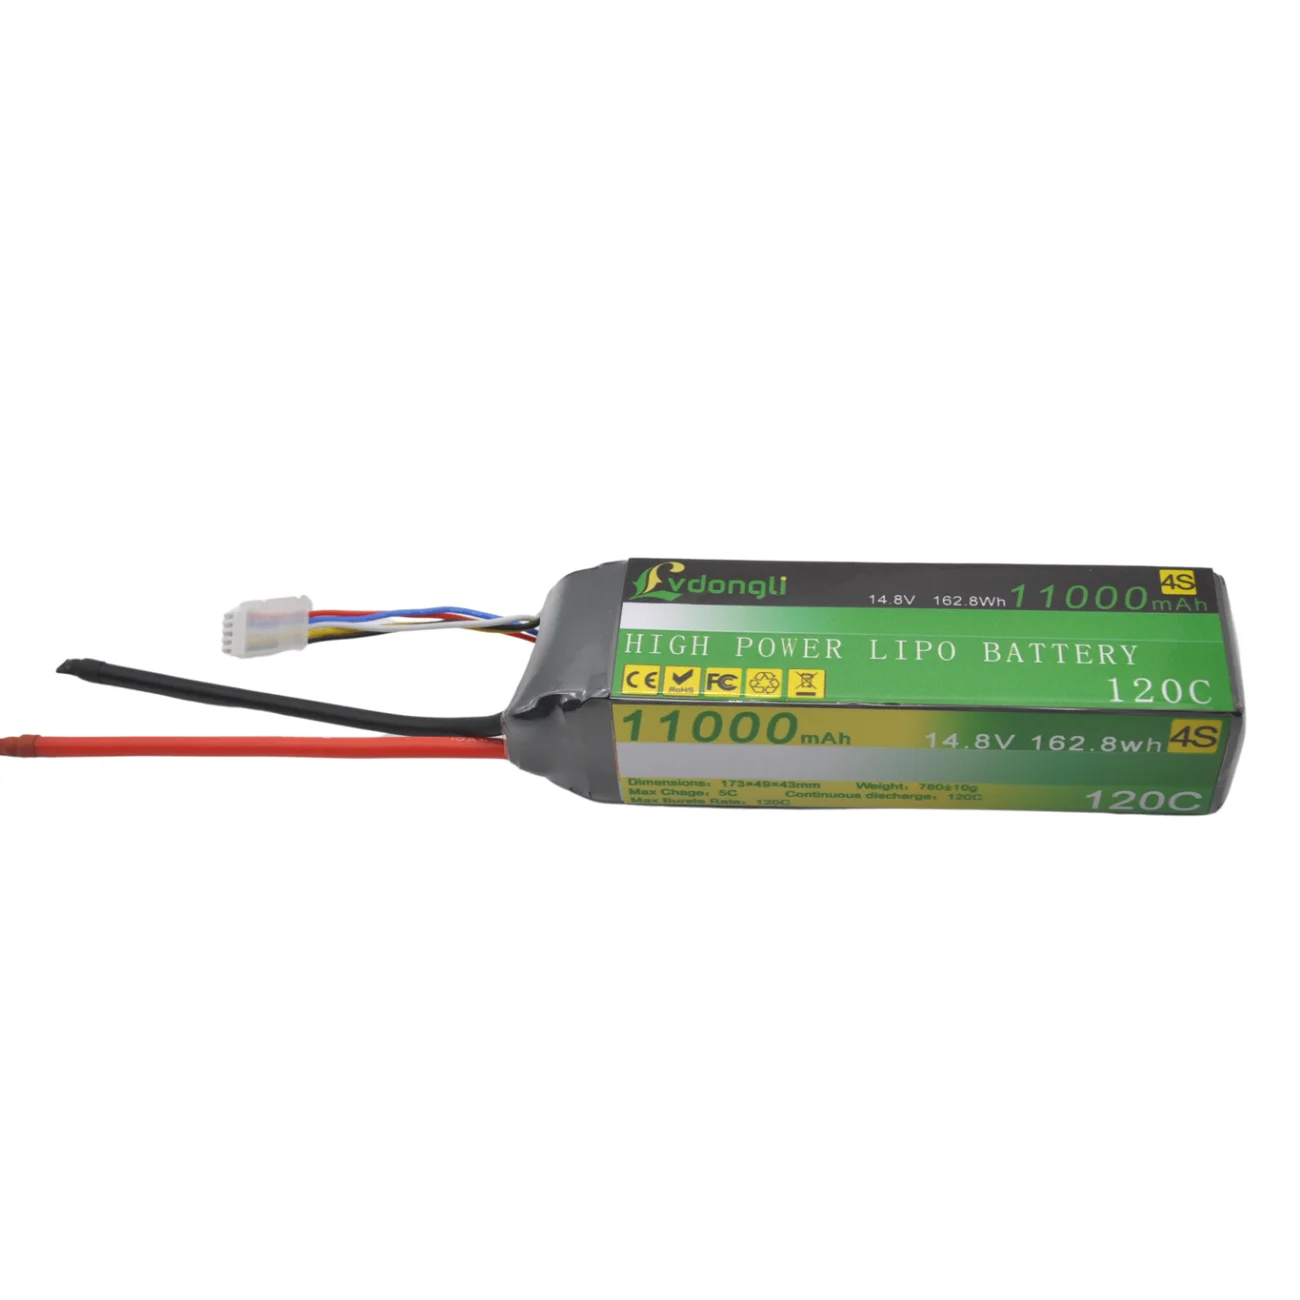 Хит продаж, перезаряжаемая полимерная литиевая батарея Lipo 14,8 В 11000 мАч